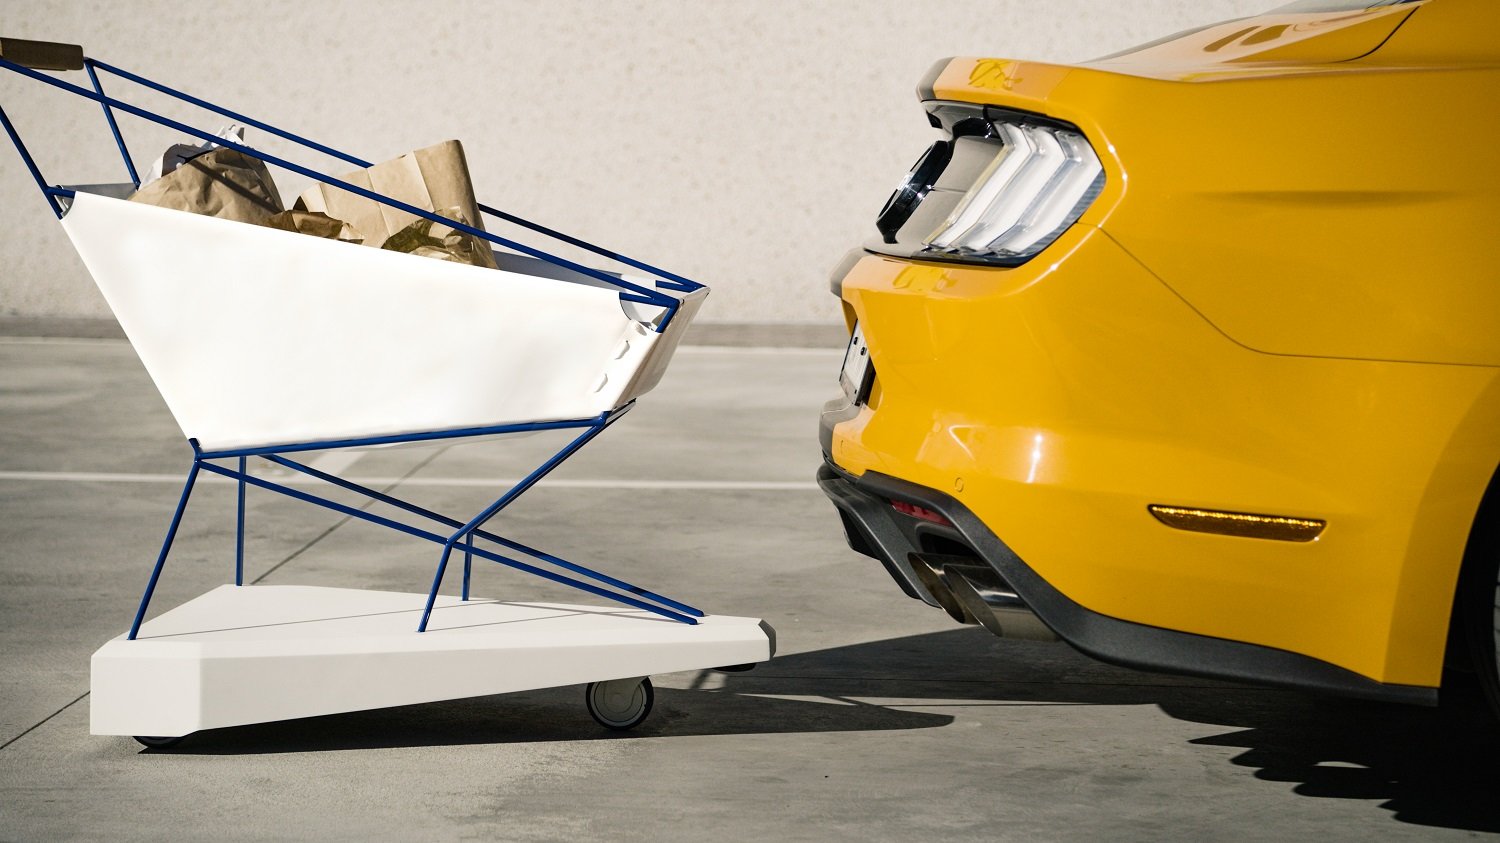 Speciální nákupní košík Ford využívá technologie automobilů, díky čemuž dokáže předcházet srážkám